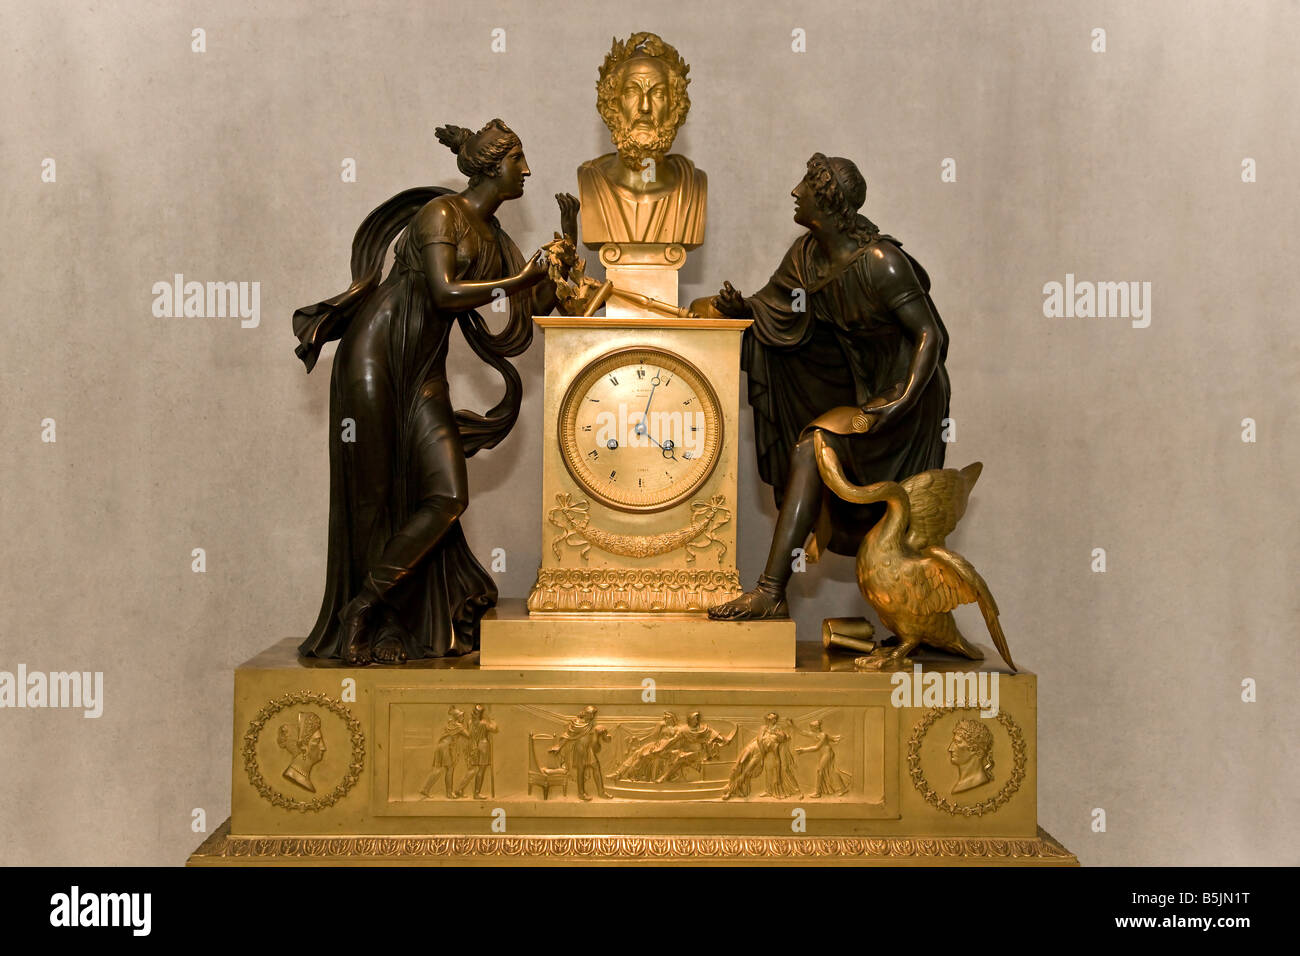 Vieille horloge dorée Banque D'Images